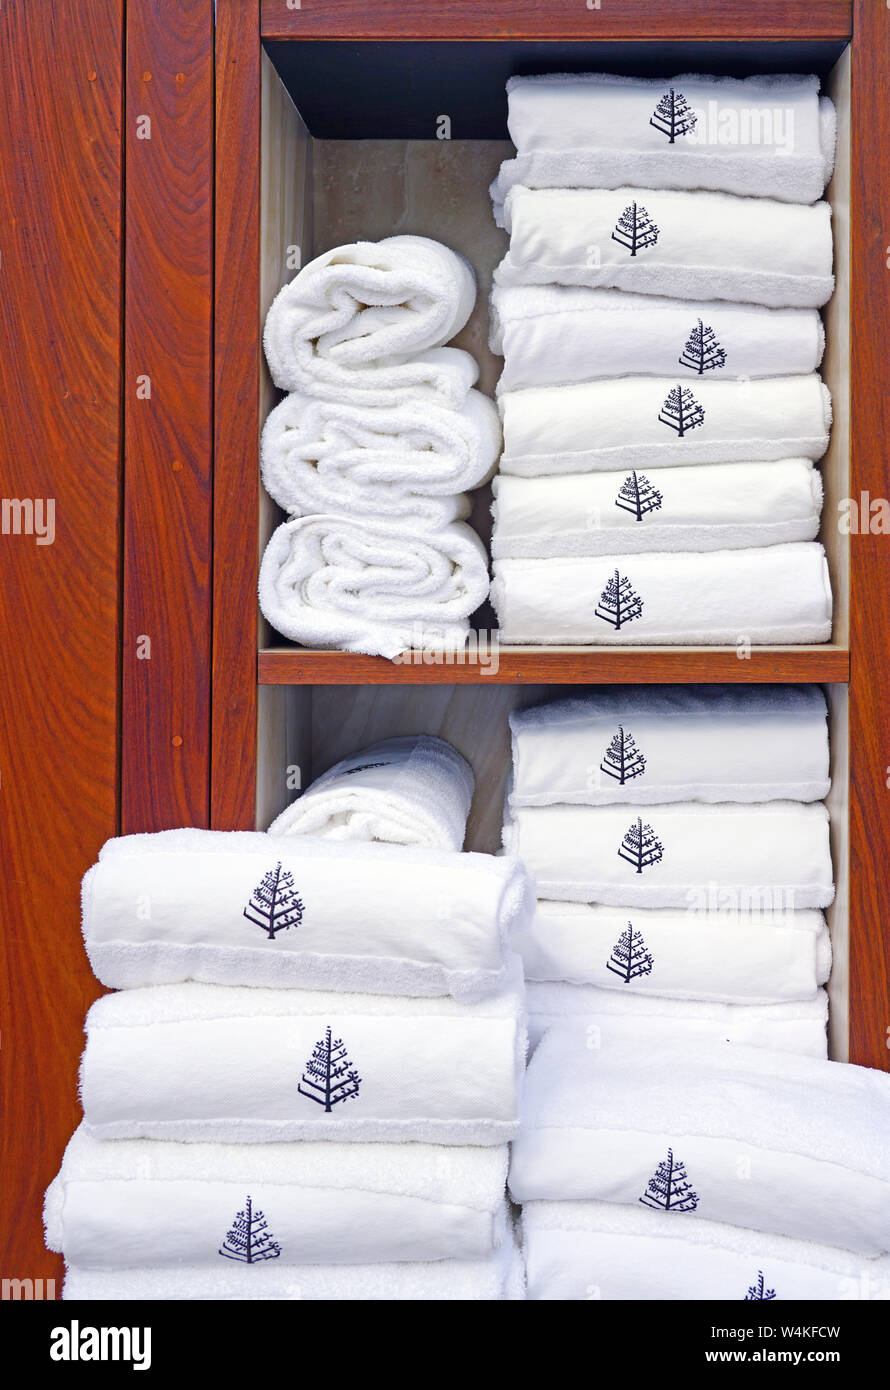 MAUI, HI -30 mars 2018- des piles de serviettes de plage blanche avec le logo de l'Four Seasons Four Seasons Maui, un complexe de luxe situé à Wailea, Maui, Ha Banque D'Images